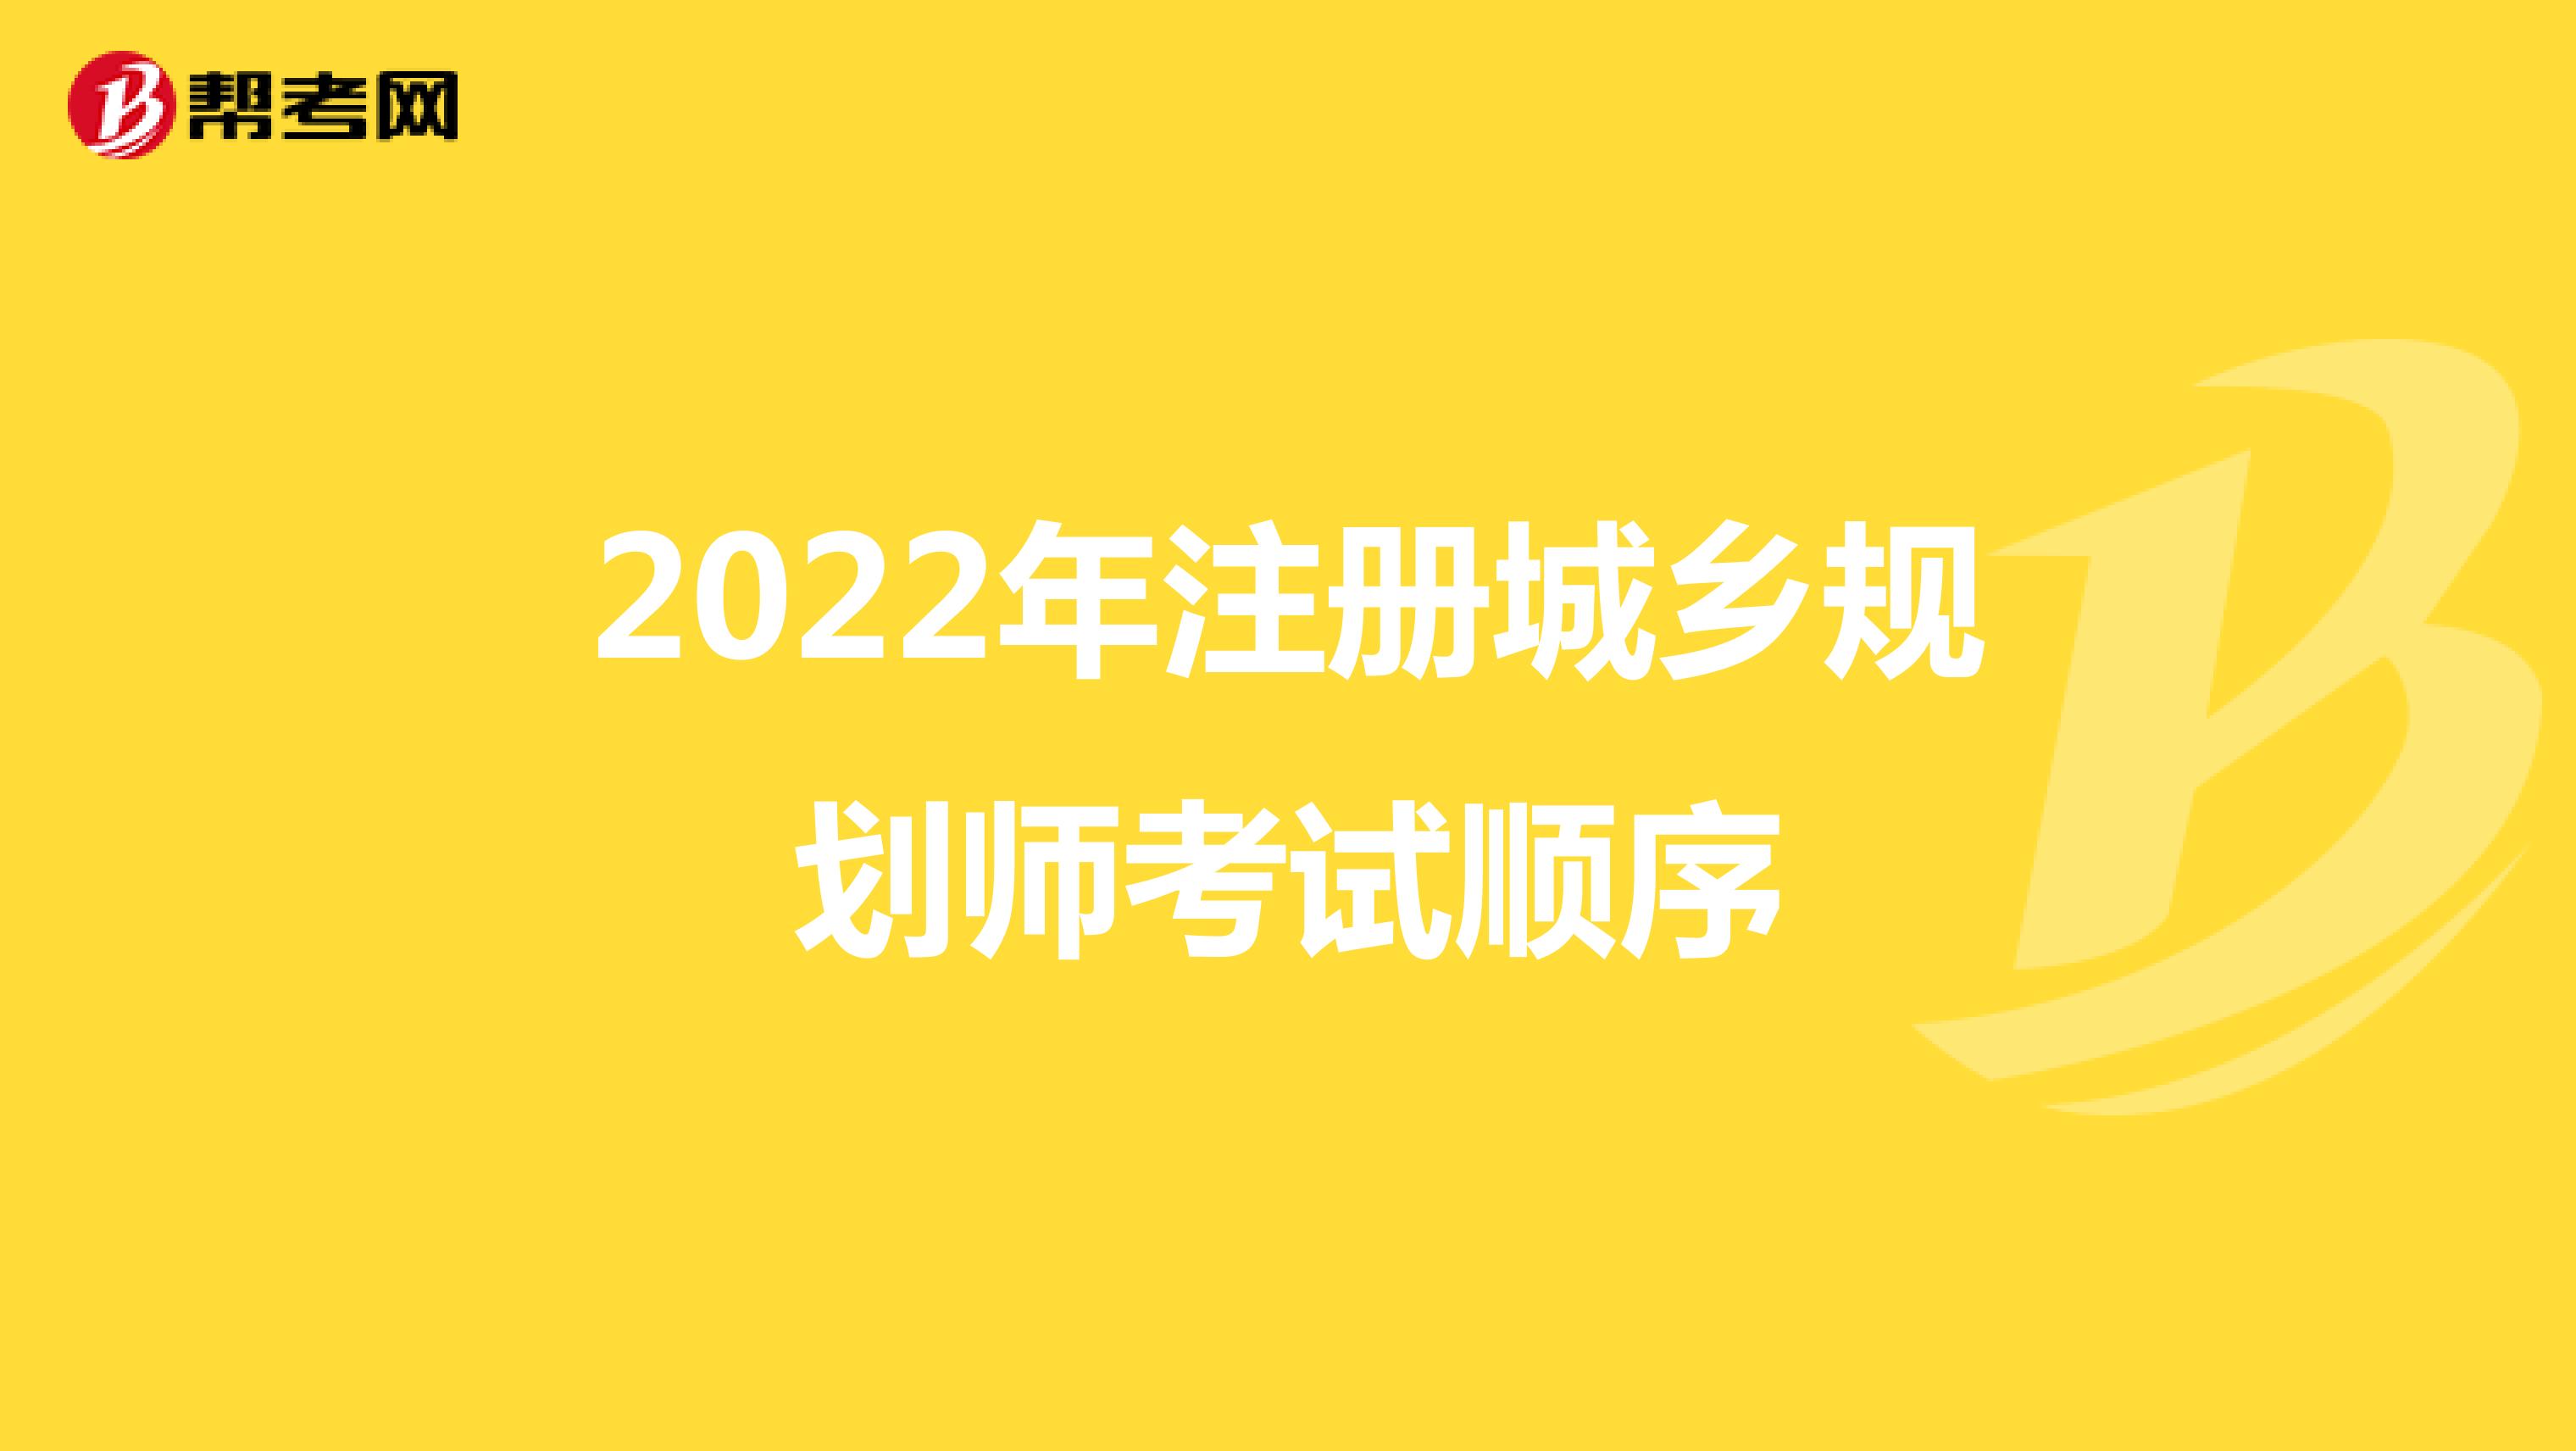 2022年注册城乡规划师考试顺序